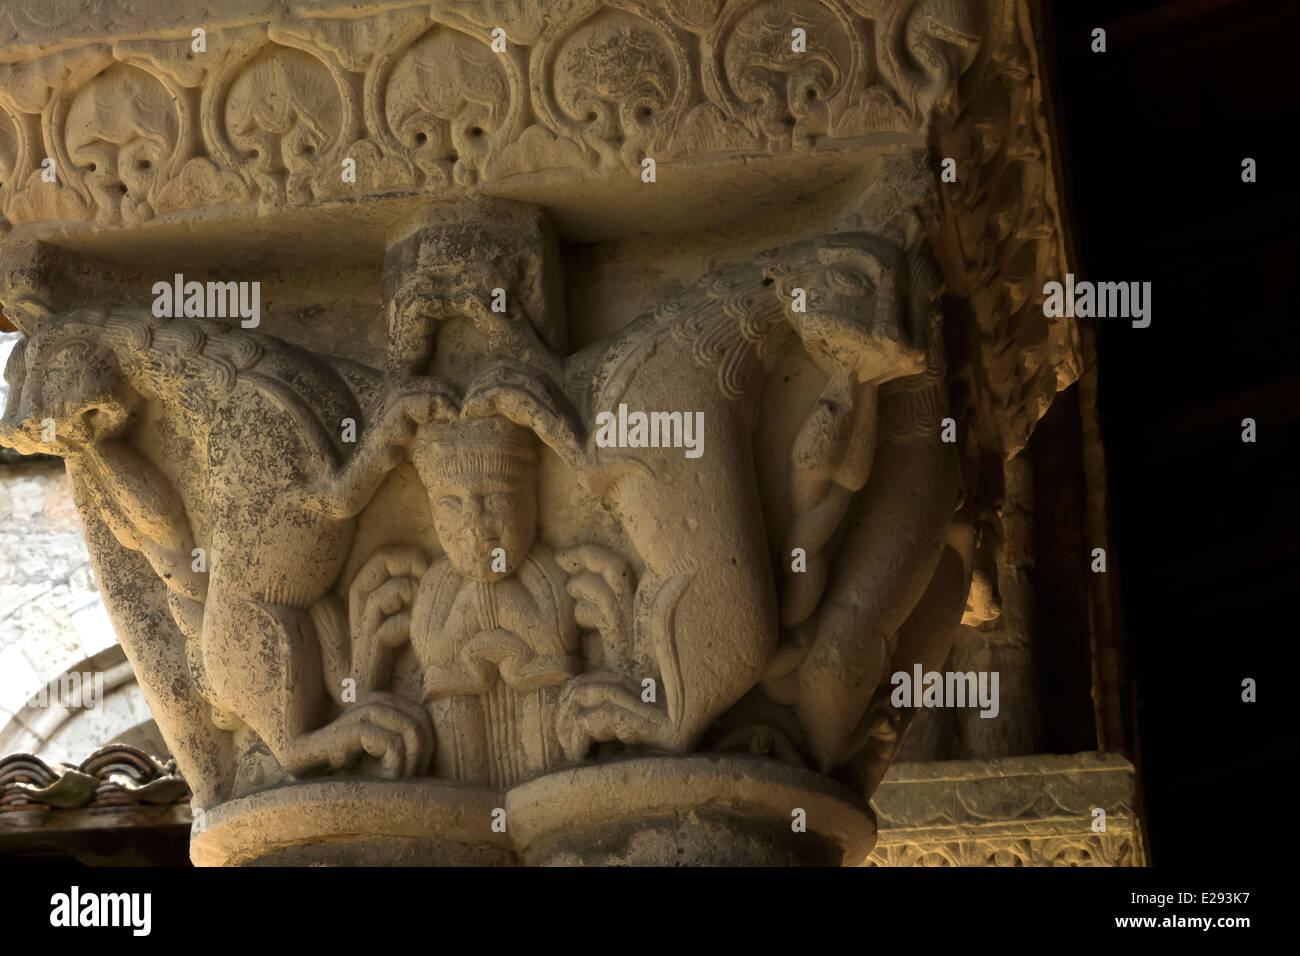 Historische Figuren, Tier, Mensch geschnitzt auf das Kapital der Spalte auf die Abtei St-Pierre in Moissac, Frankreich. Stockfoto